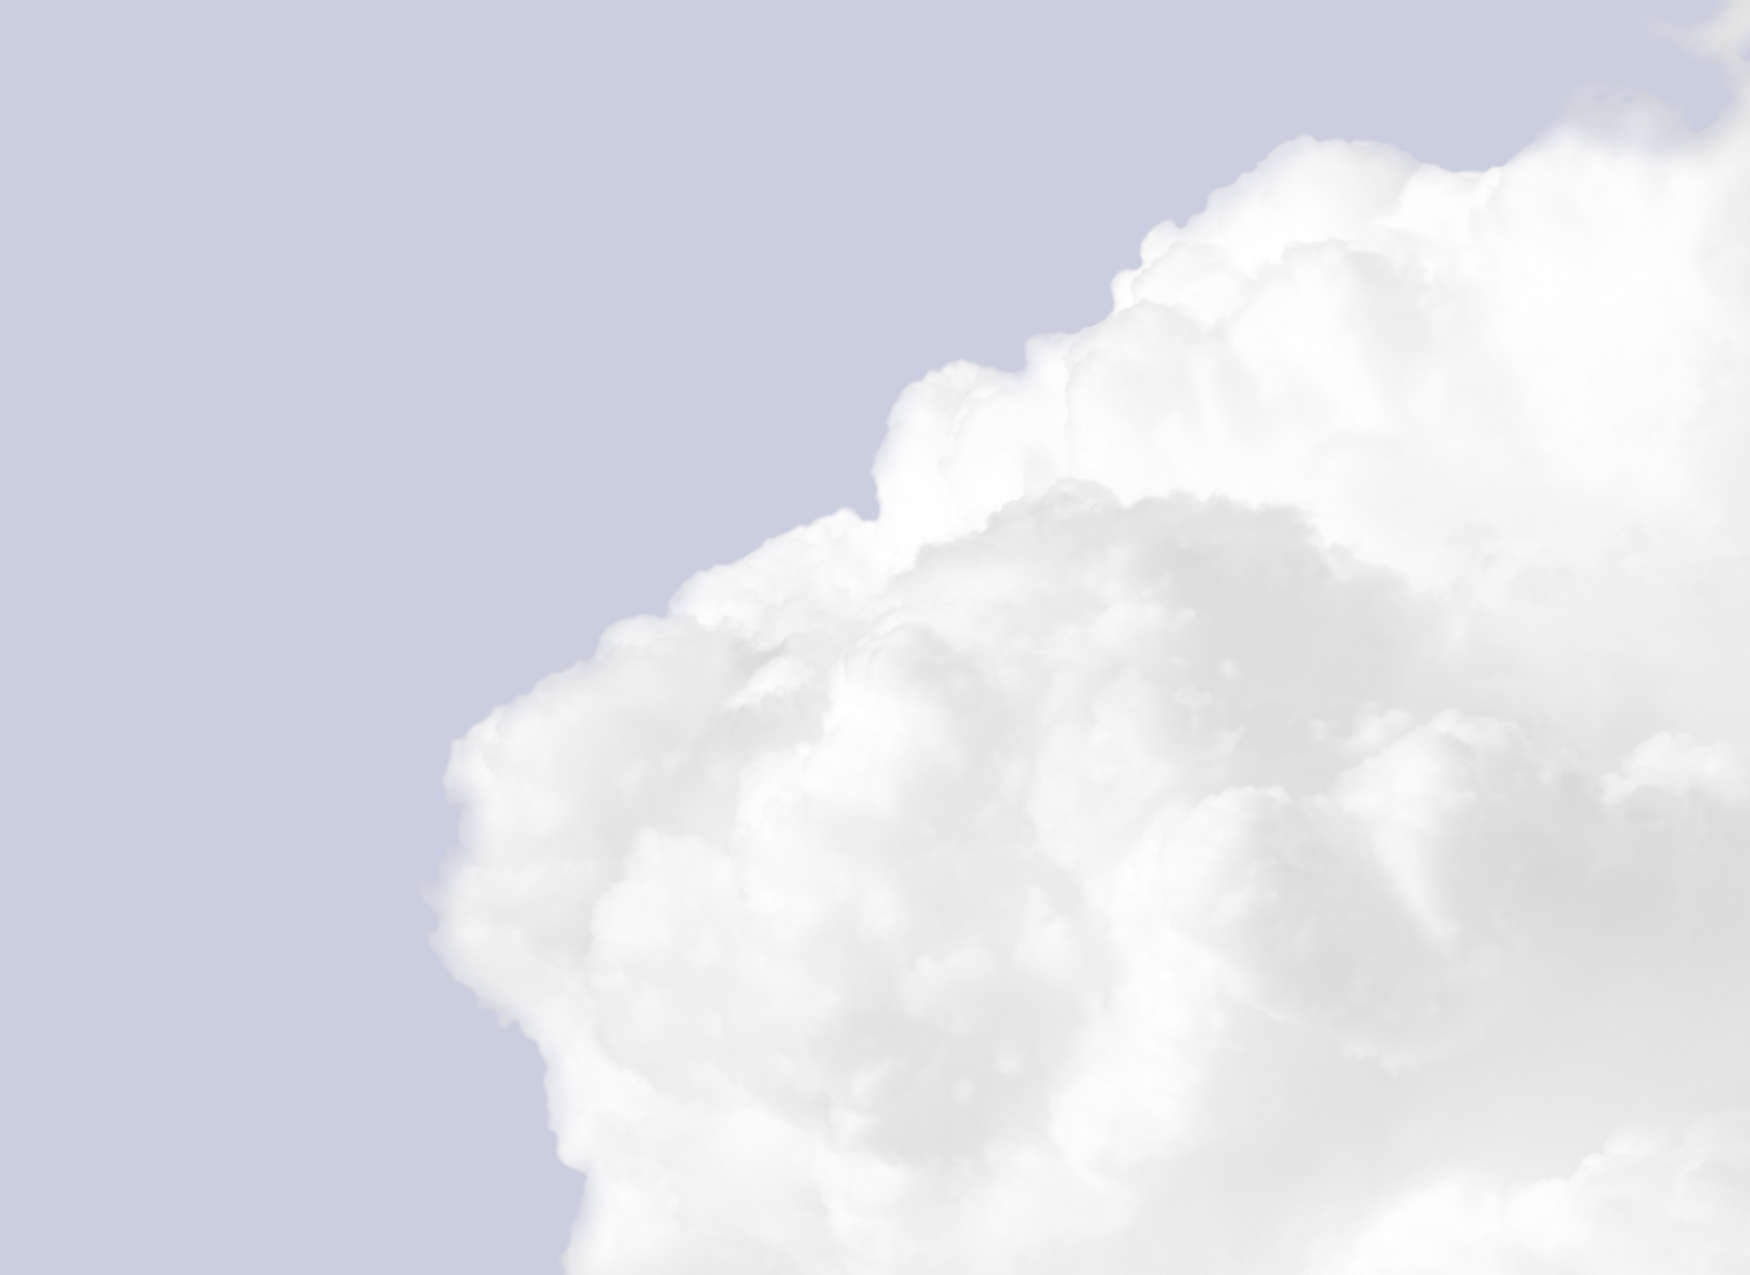             Digital behang met witte wolken in een helderblauwe lucht - Blauw, Wit
        